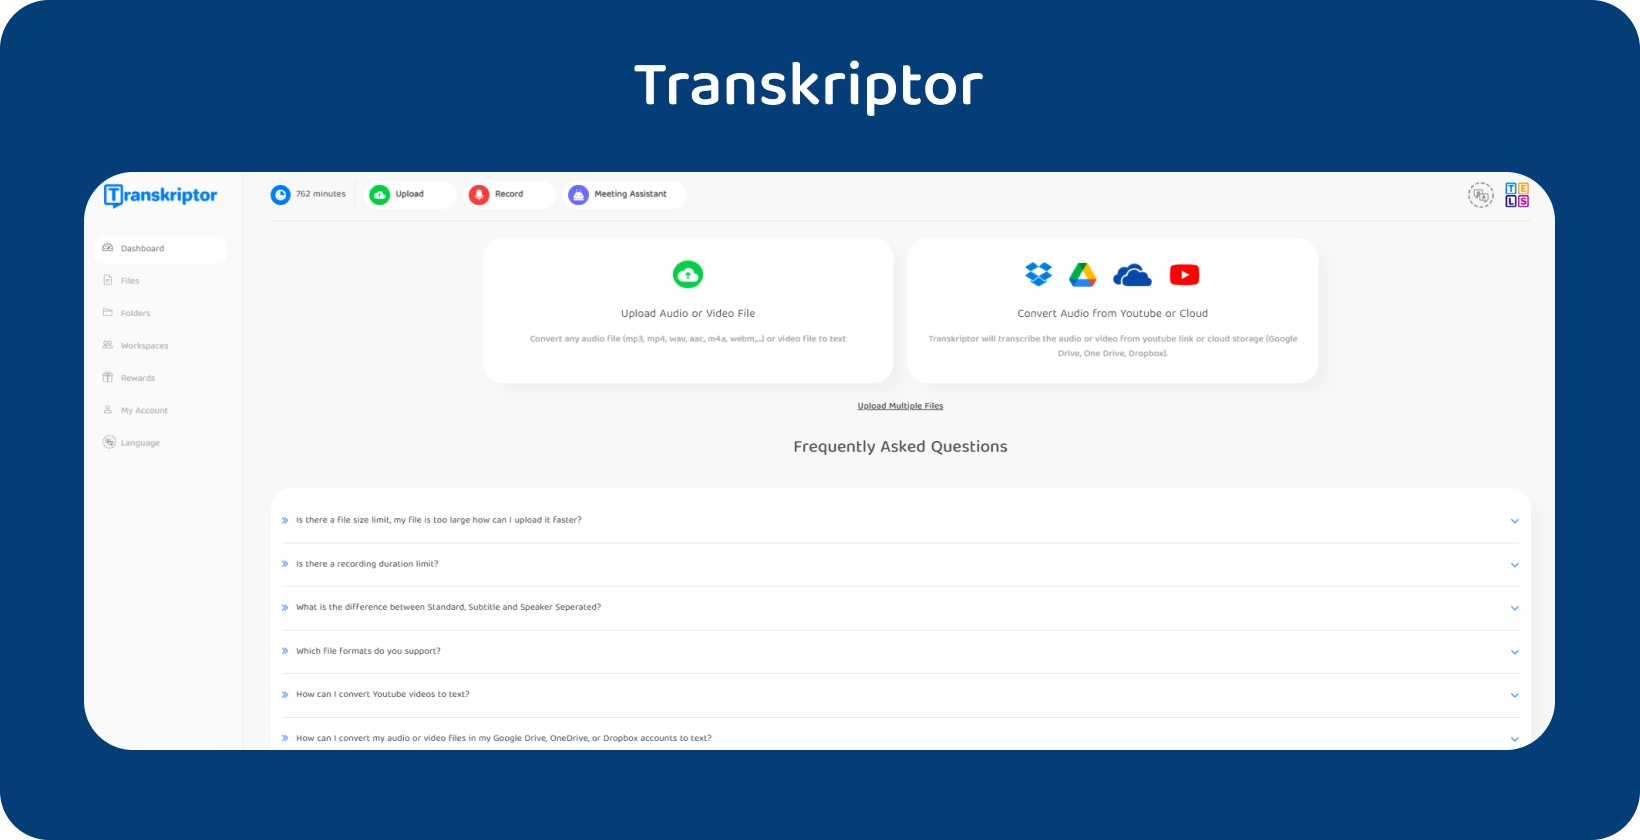 Transkriptor interface da  promovendo seu serviço de conversão de áudio em texto.